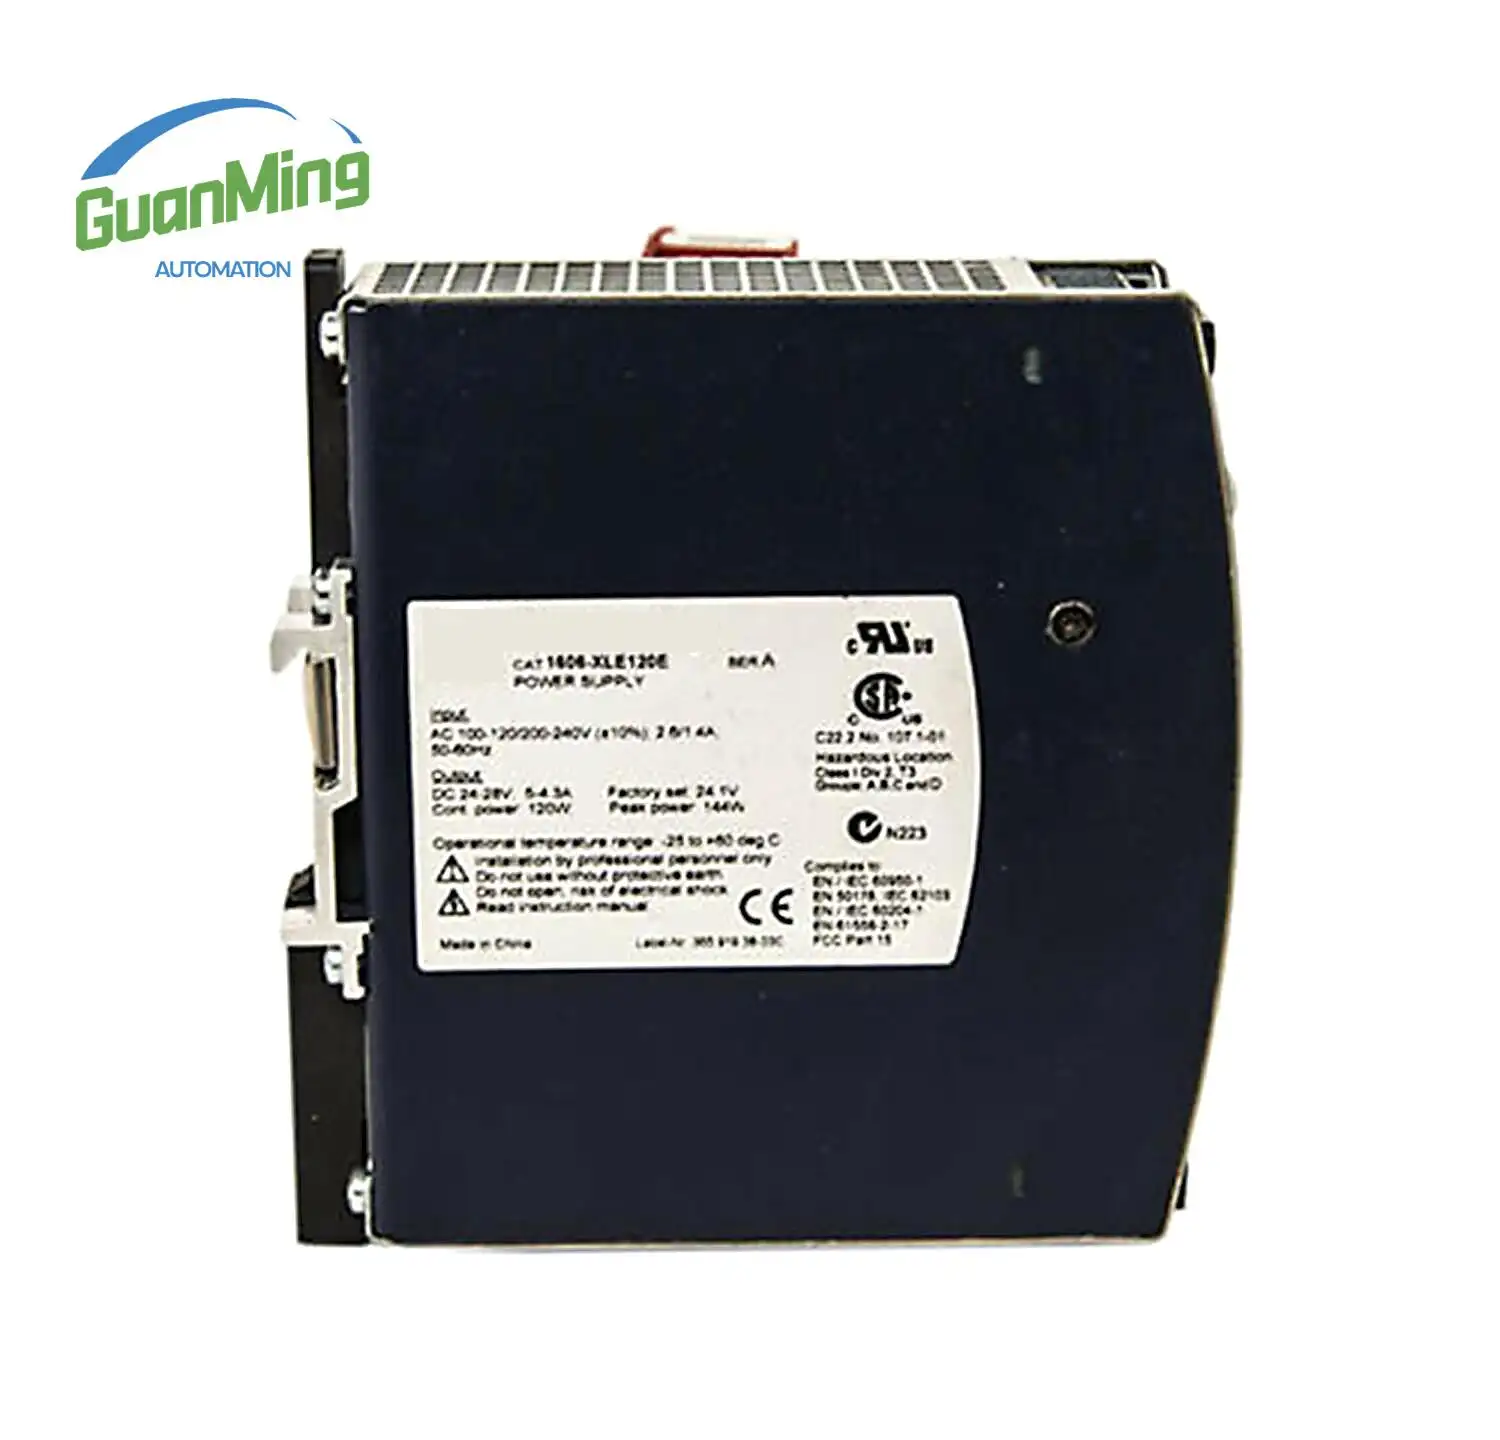 1606XLS480ED Ser C Power Supply 1606 Series Spot Plc Supplier Brand New 1606-XLS480E-D